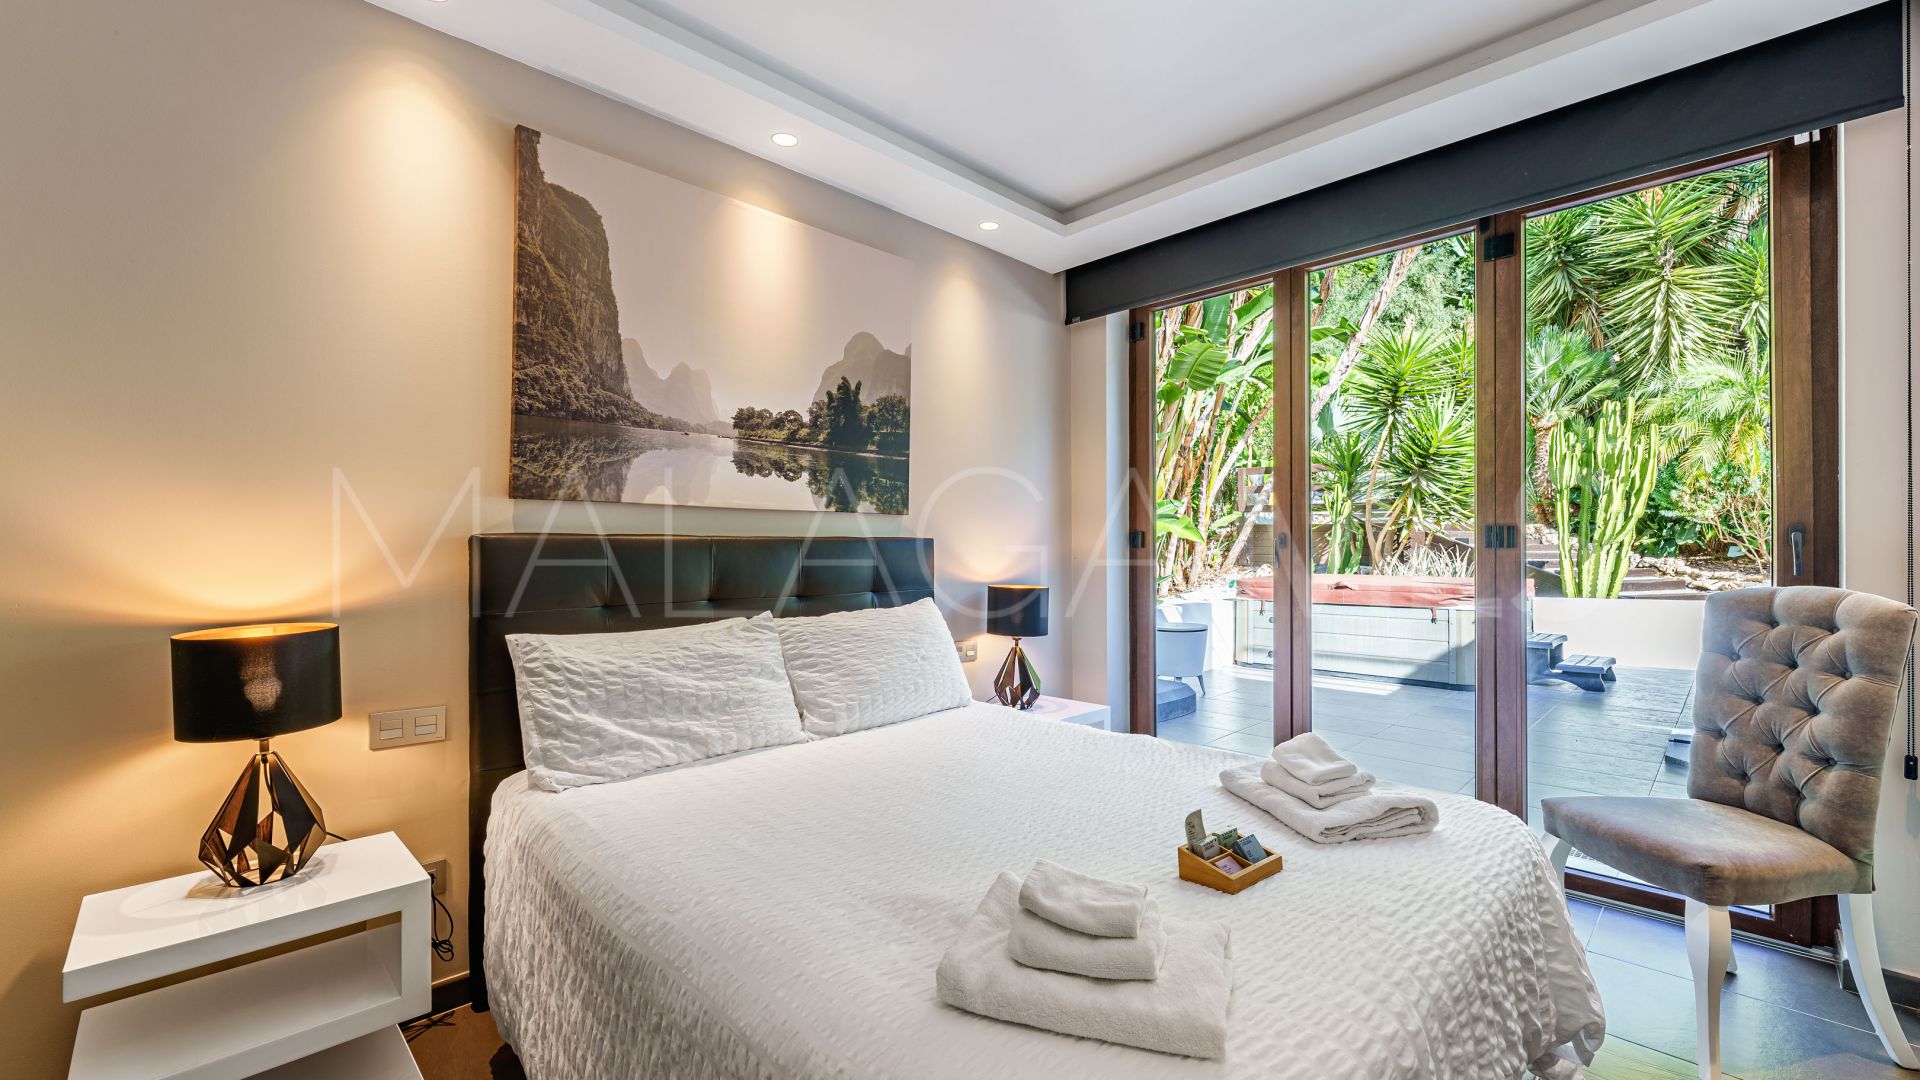 Villa for sale in El Rosario with 5 bedrooms